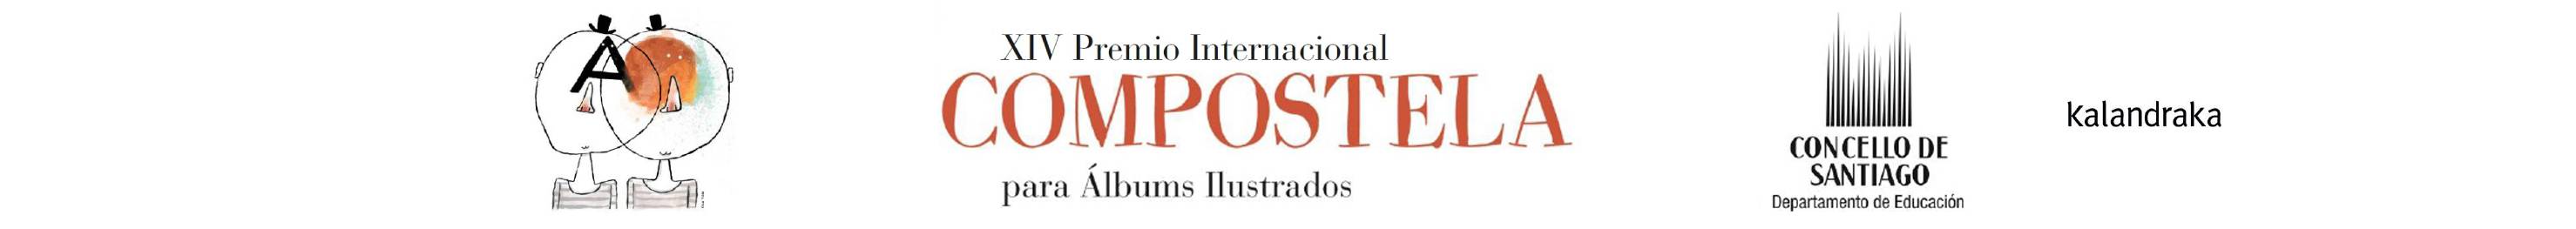 XIV Premio Compostela Álbums Ilustrados